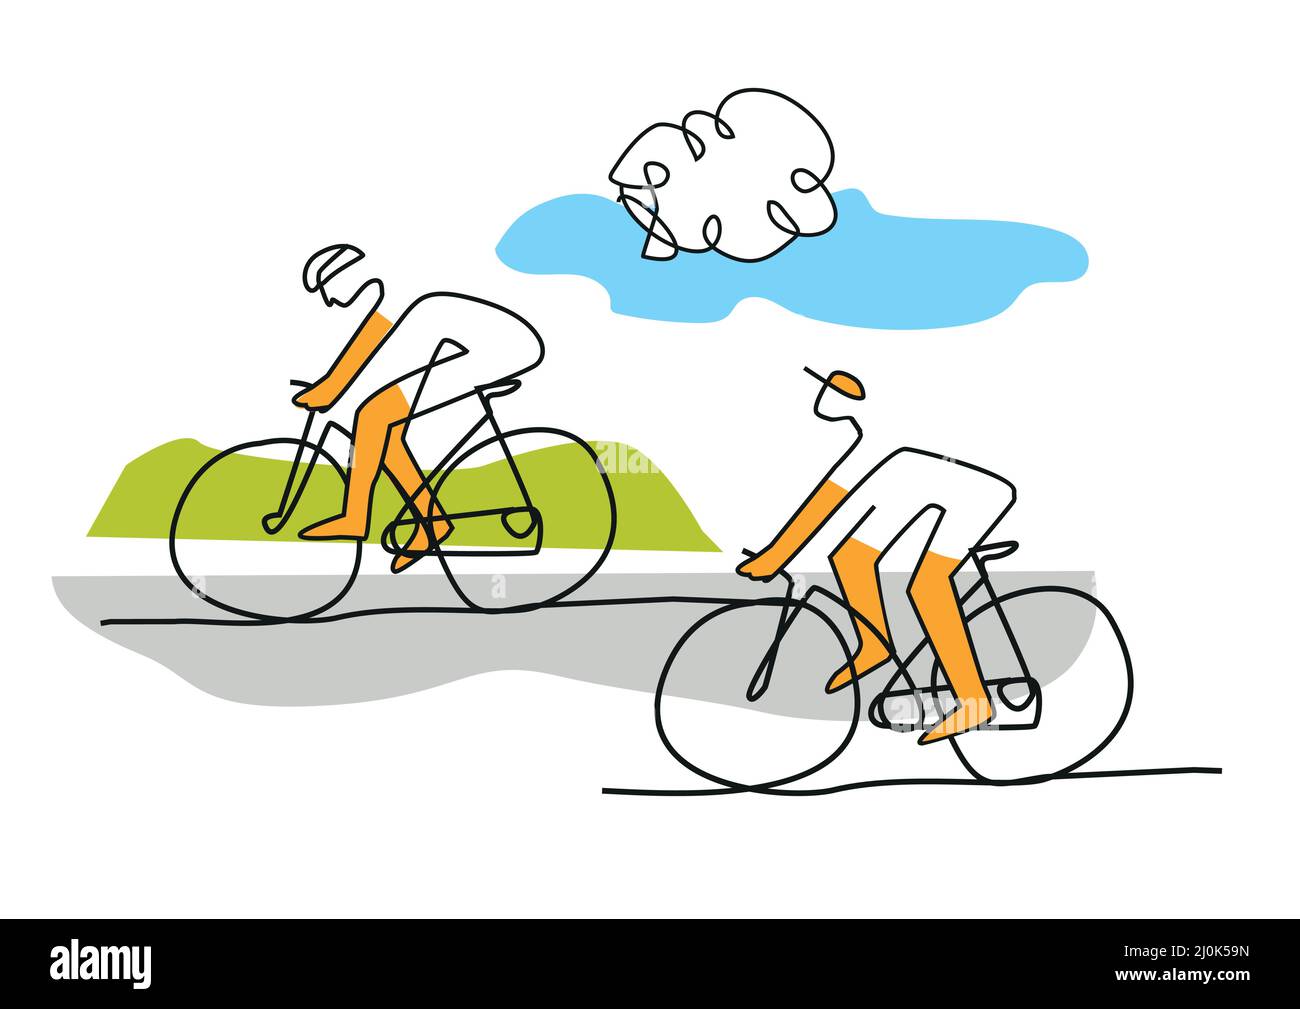 Zwei Radfahrer, Linie Kunst stilisierte Karikatur. Stilisierte Illustration von Straßenradfahrern. Design der kontinuierlichen Linienzeichnung. Vektor verfügbar. Stock Vektor